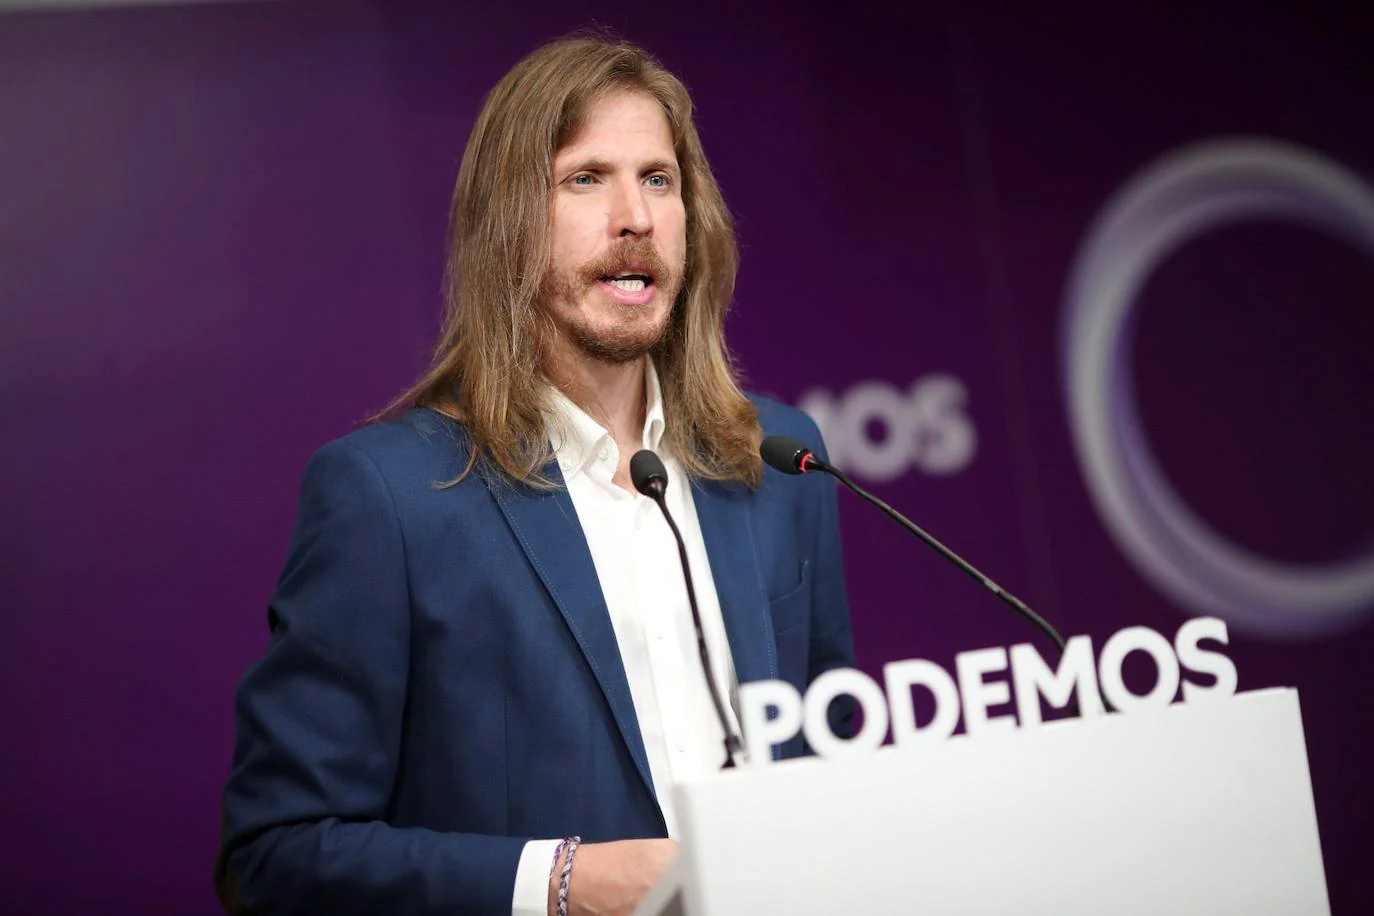 La difícil reconstrucción de Podemos en Castilla y León: pocos recursos y la alianza con IU en el horizonte electoral